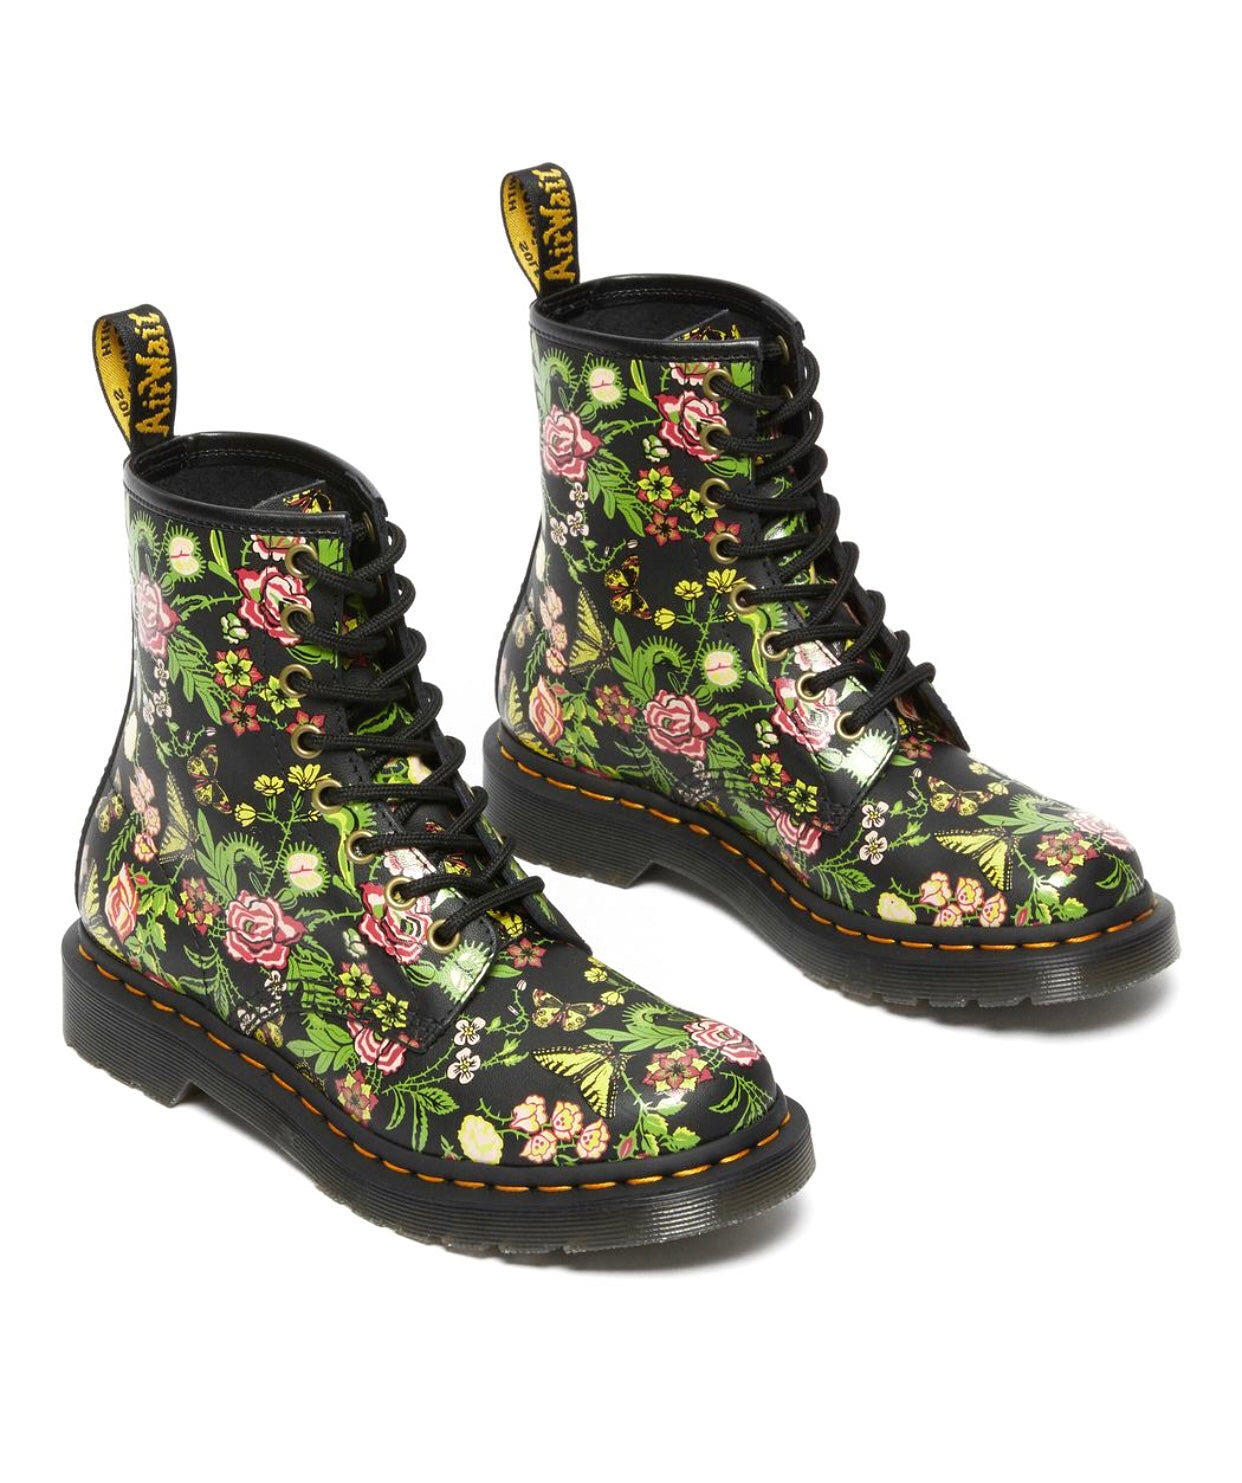 Dr. Martens 1460 Black Bloom Backhand Floral Ankle 8 Eyelet Boot